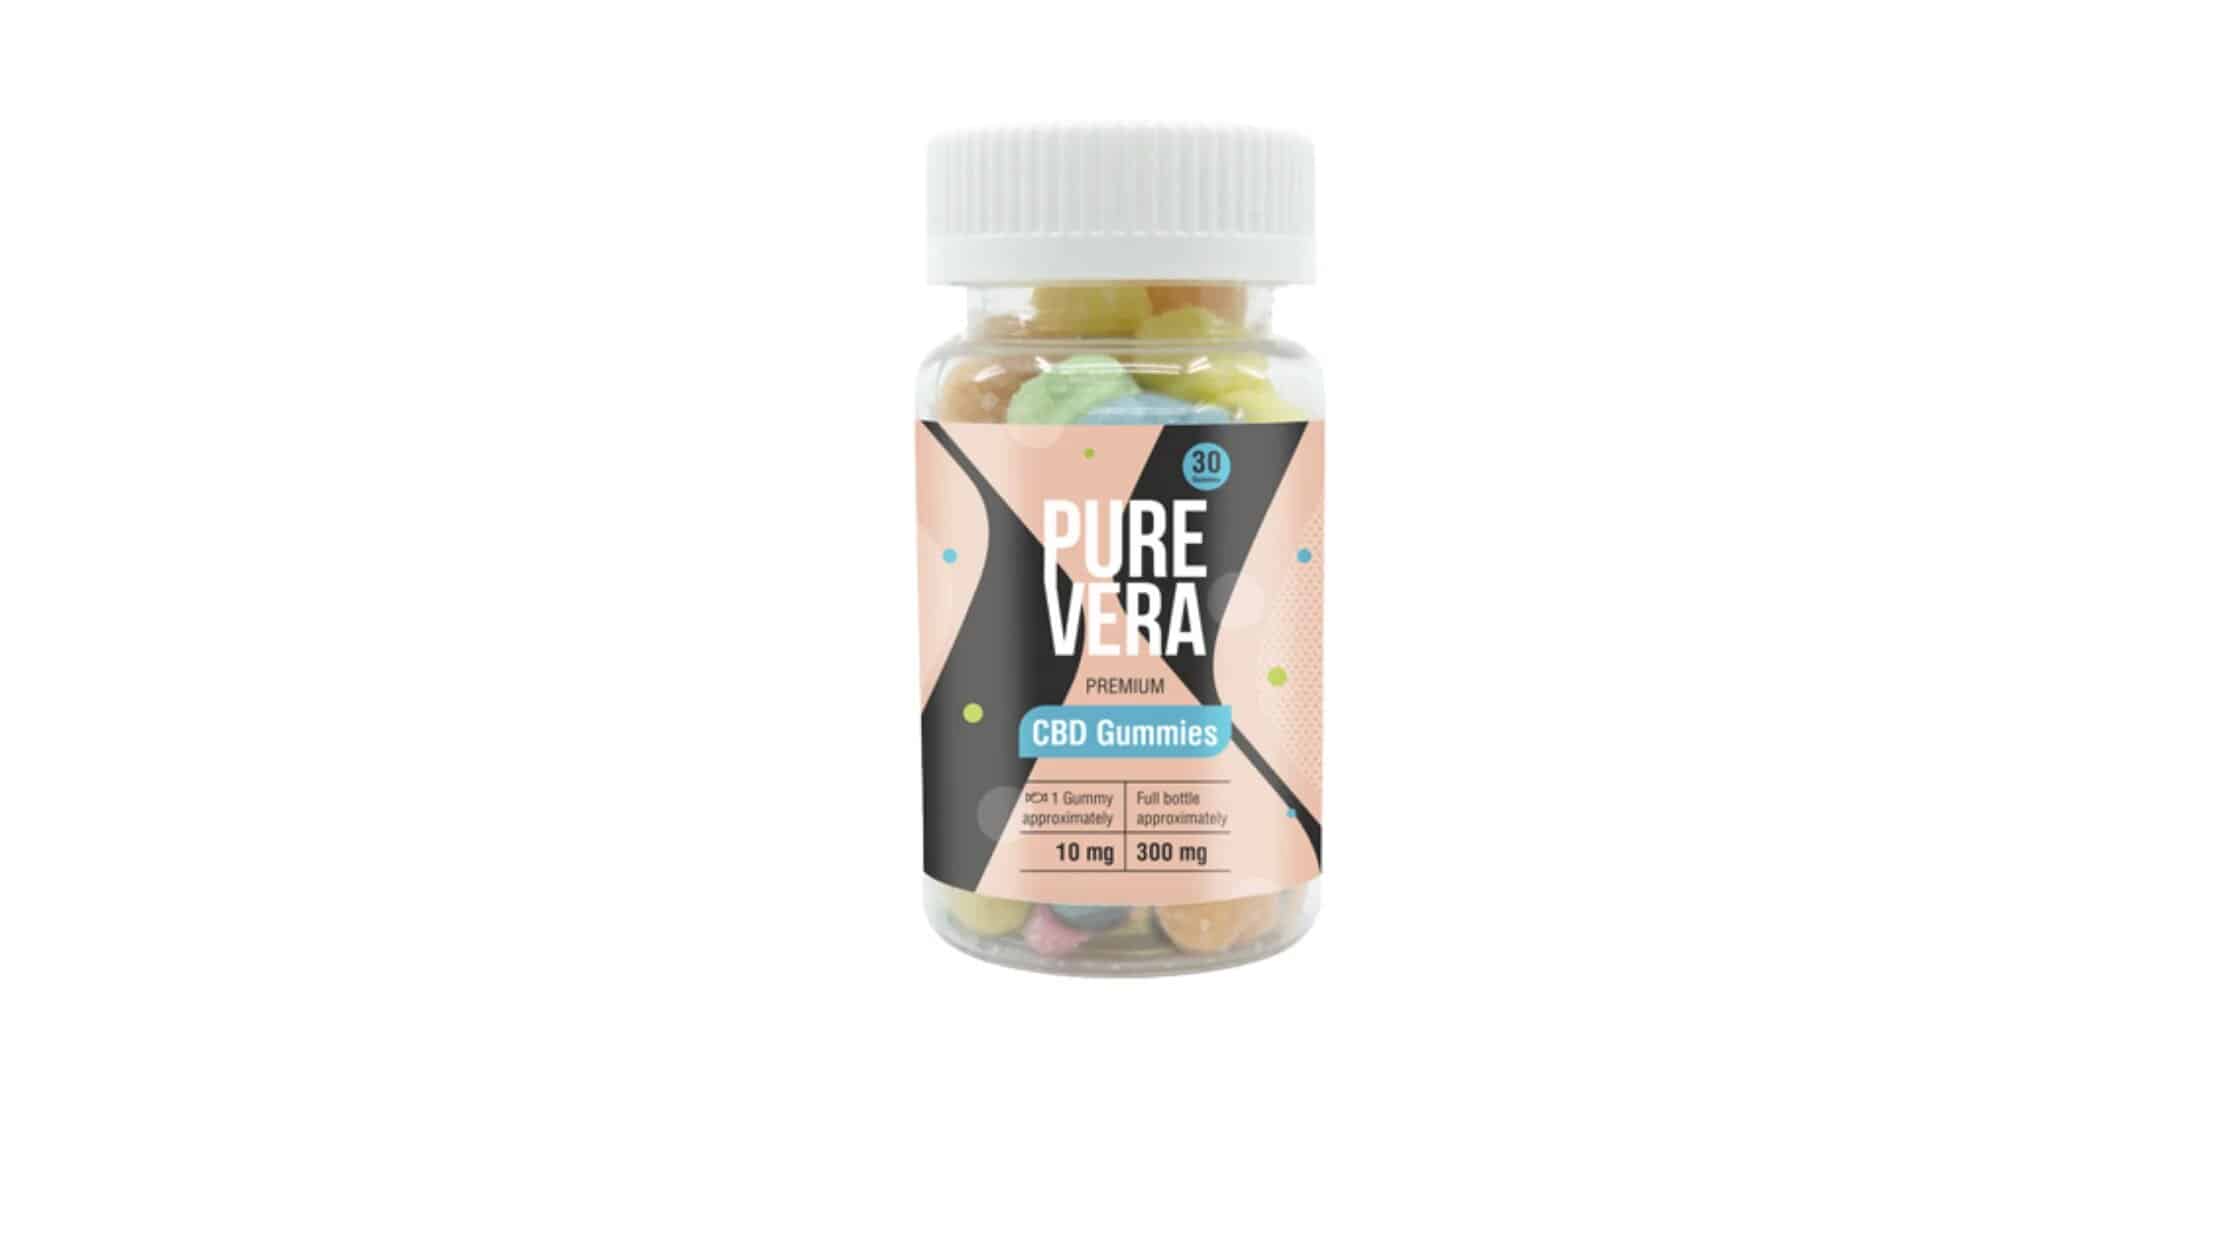 Pure Vera CBD Gummies Reviews